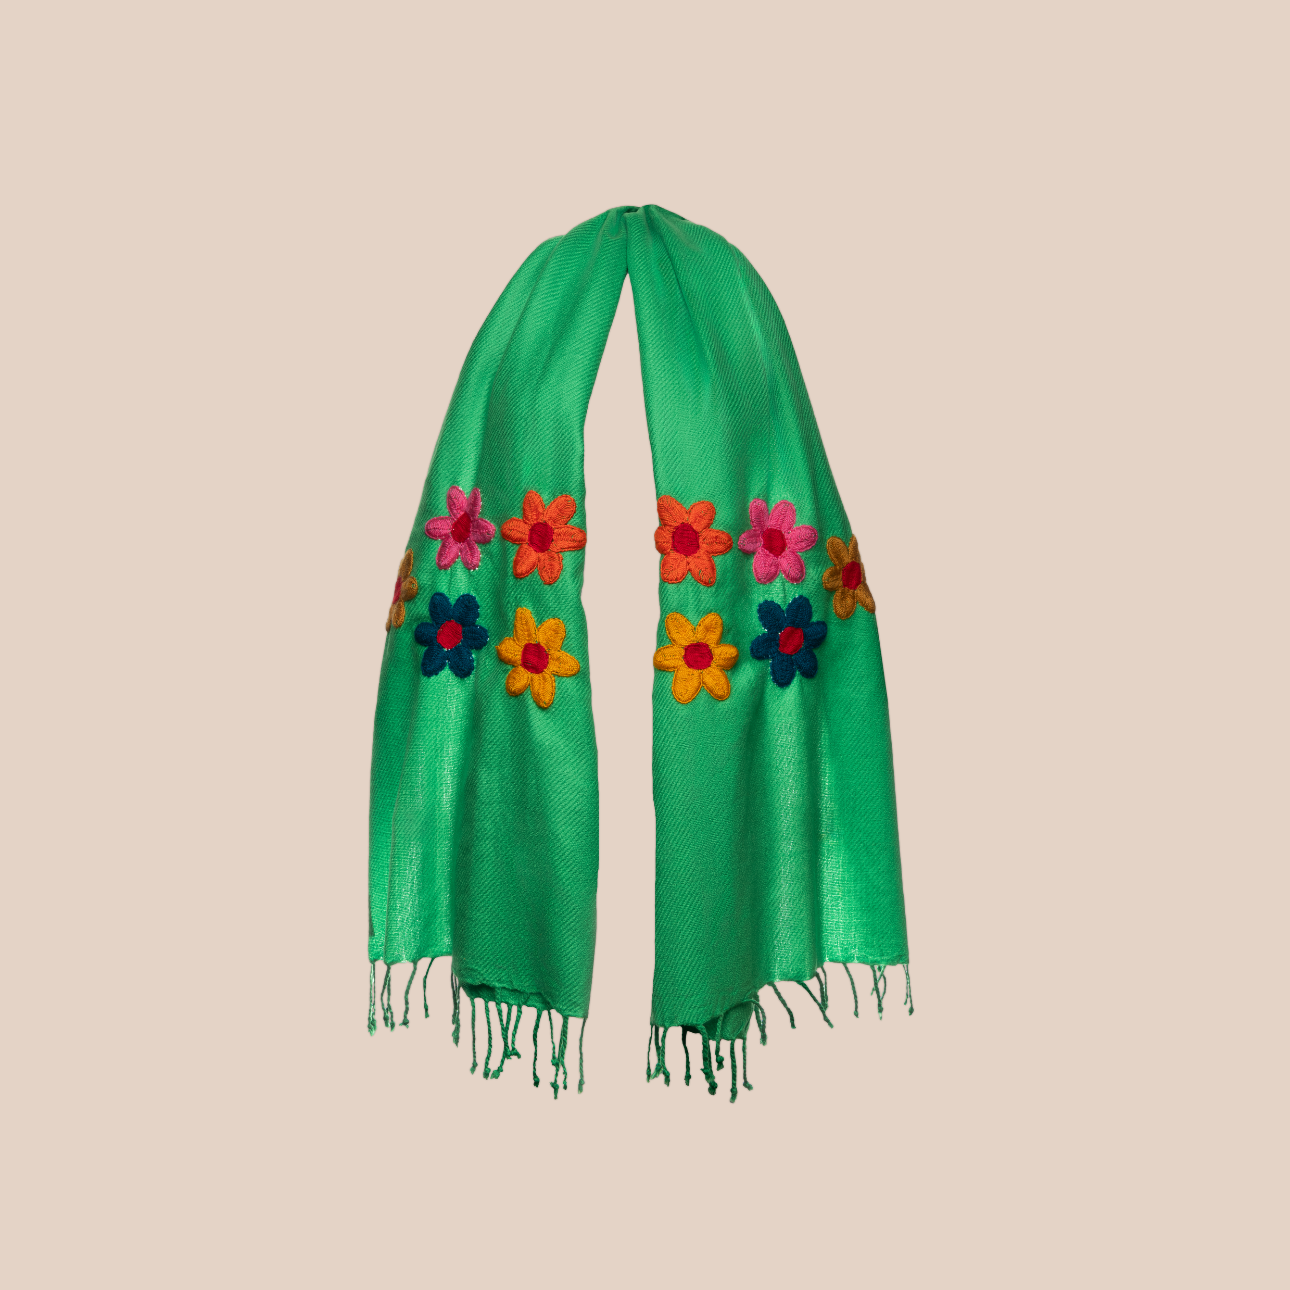 Image du chale flowers en vert de Maison Badigo, un chale en laine brodé a la main